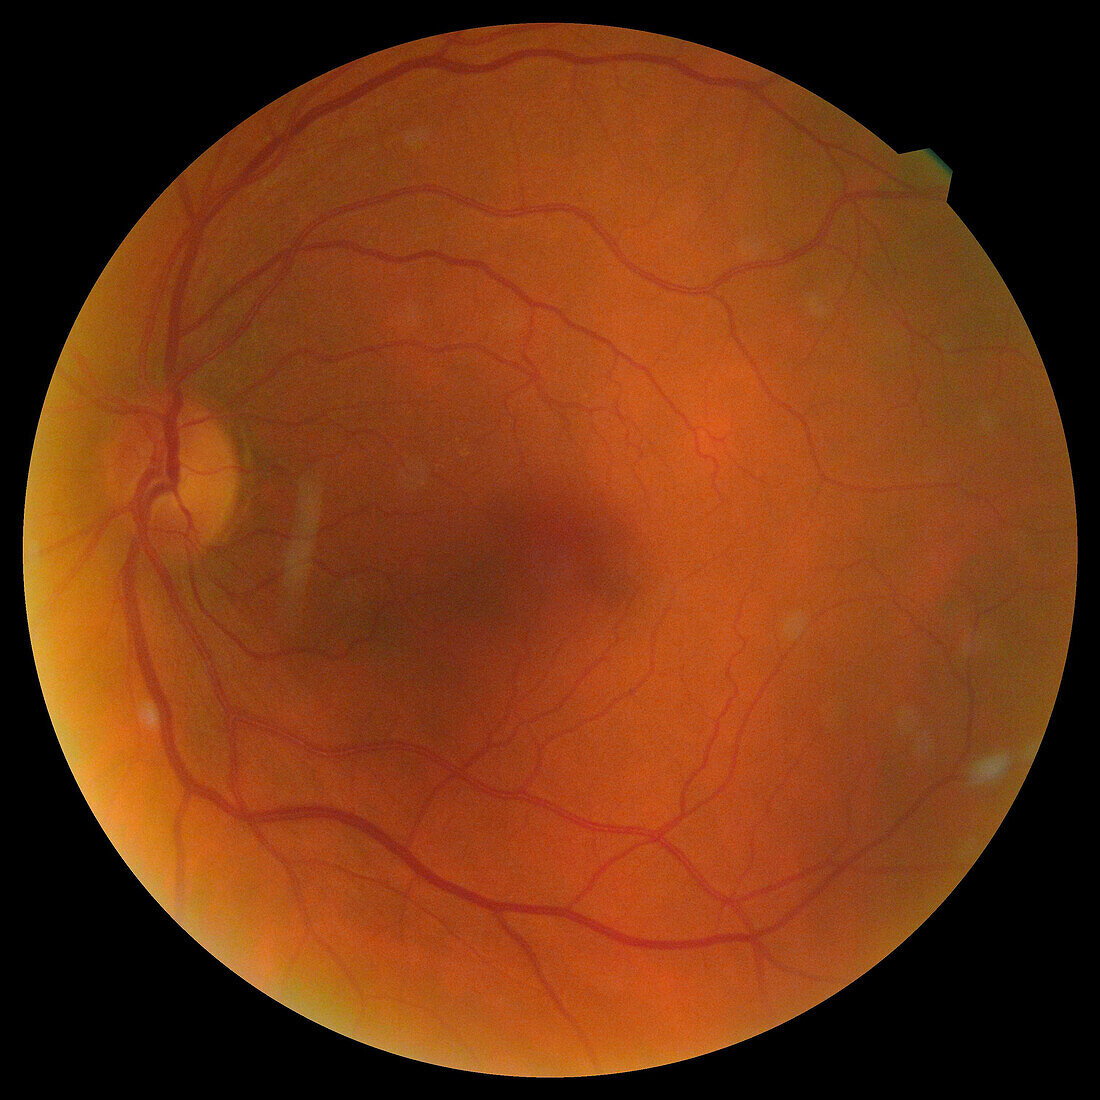 Healthy eye, funduscopy scan